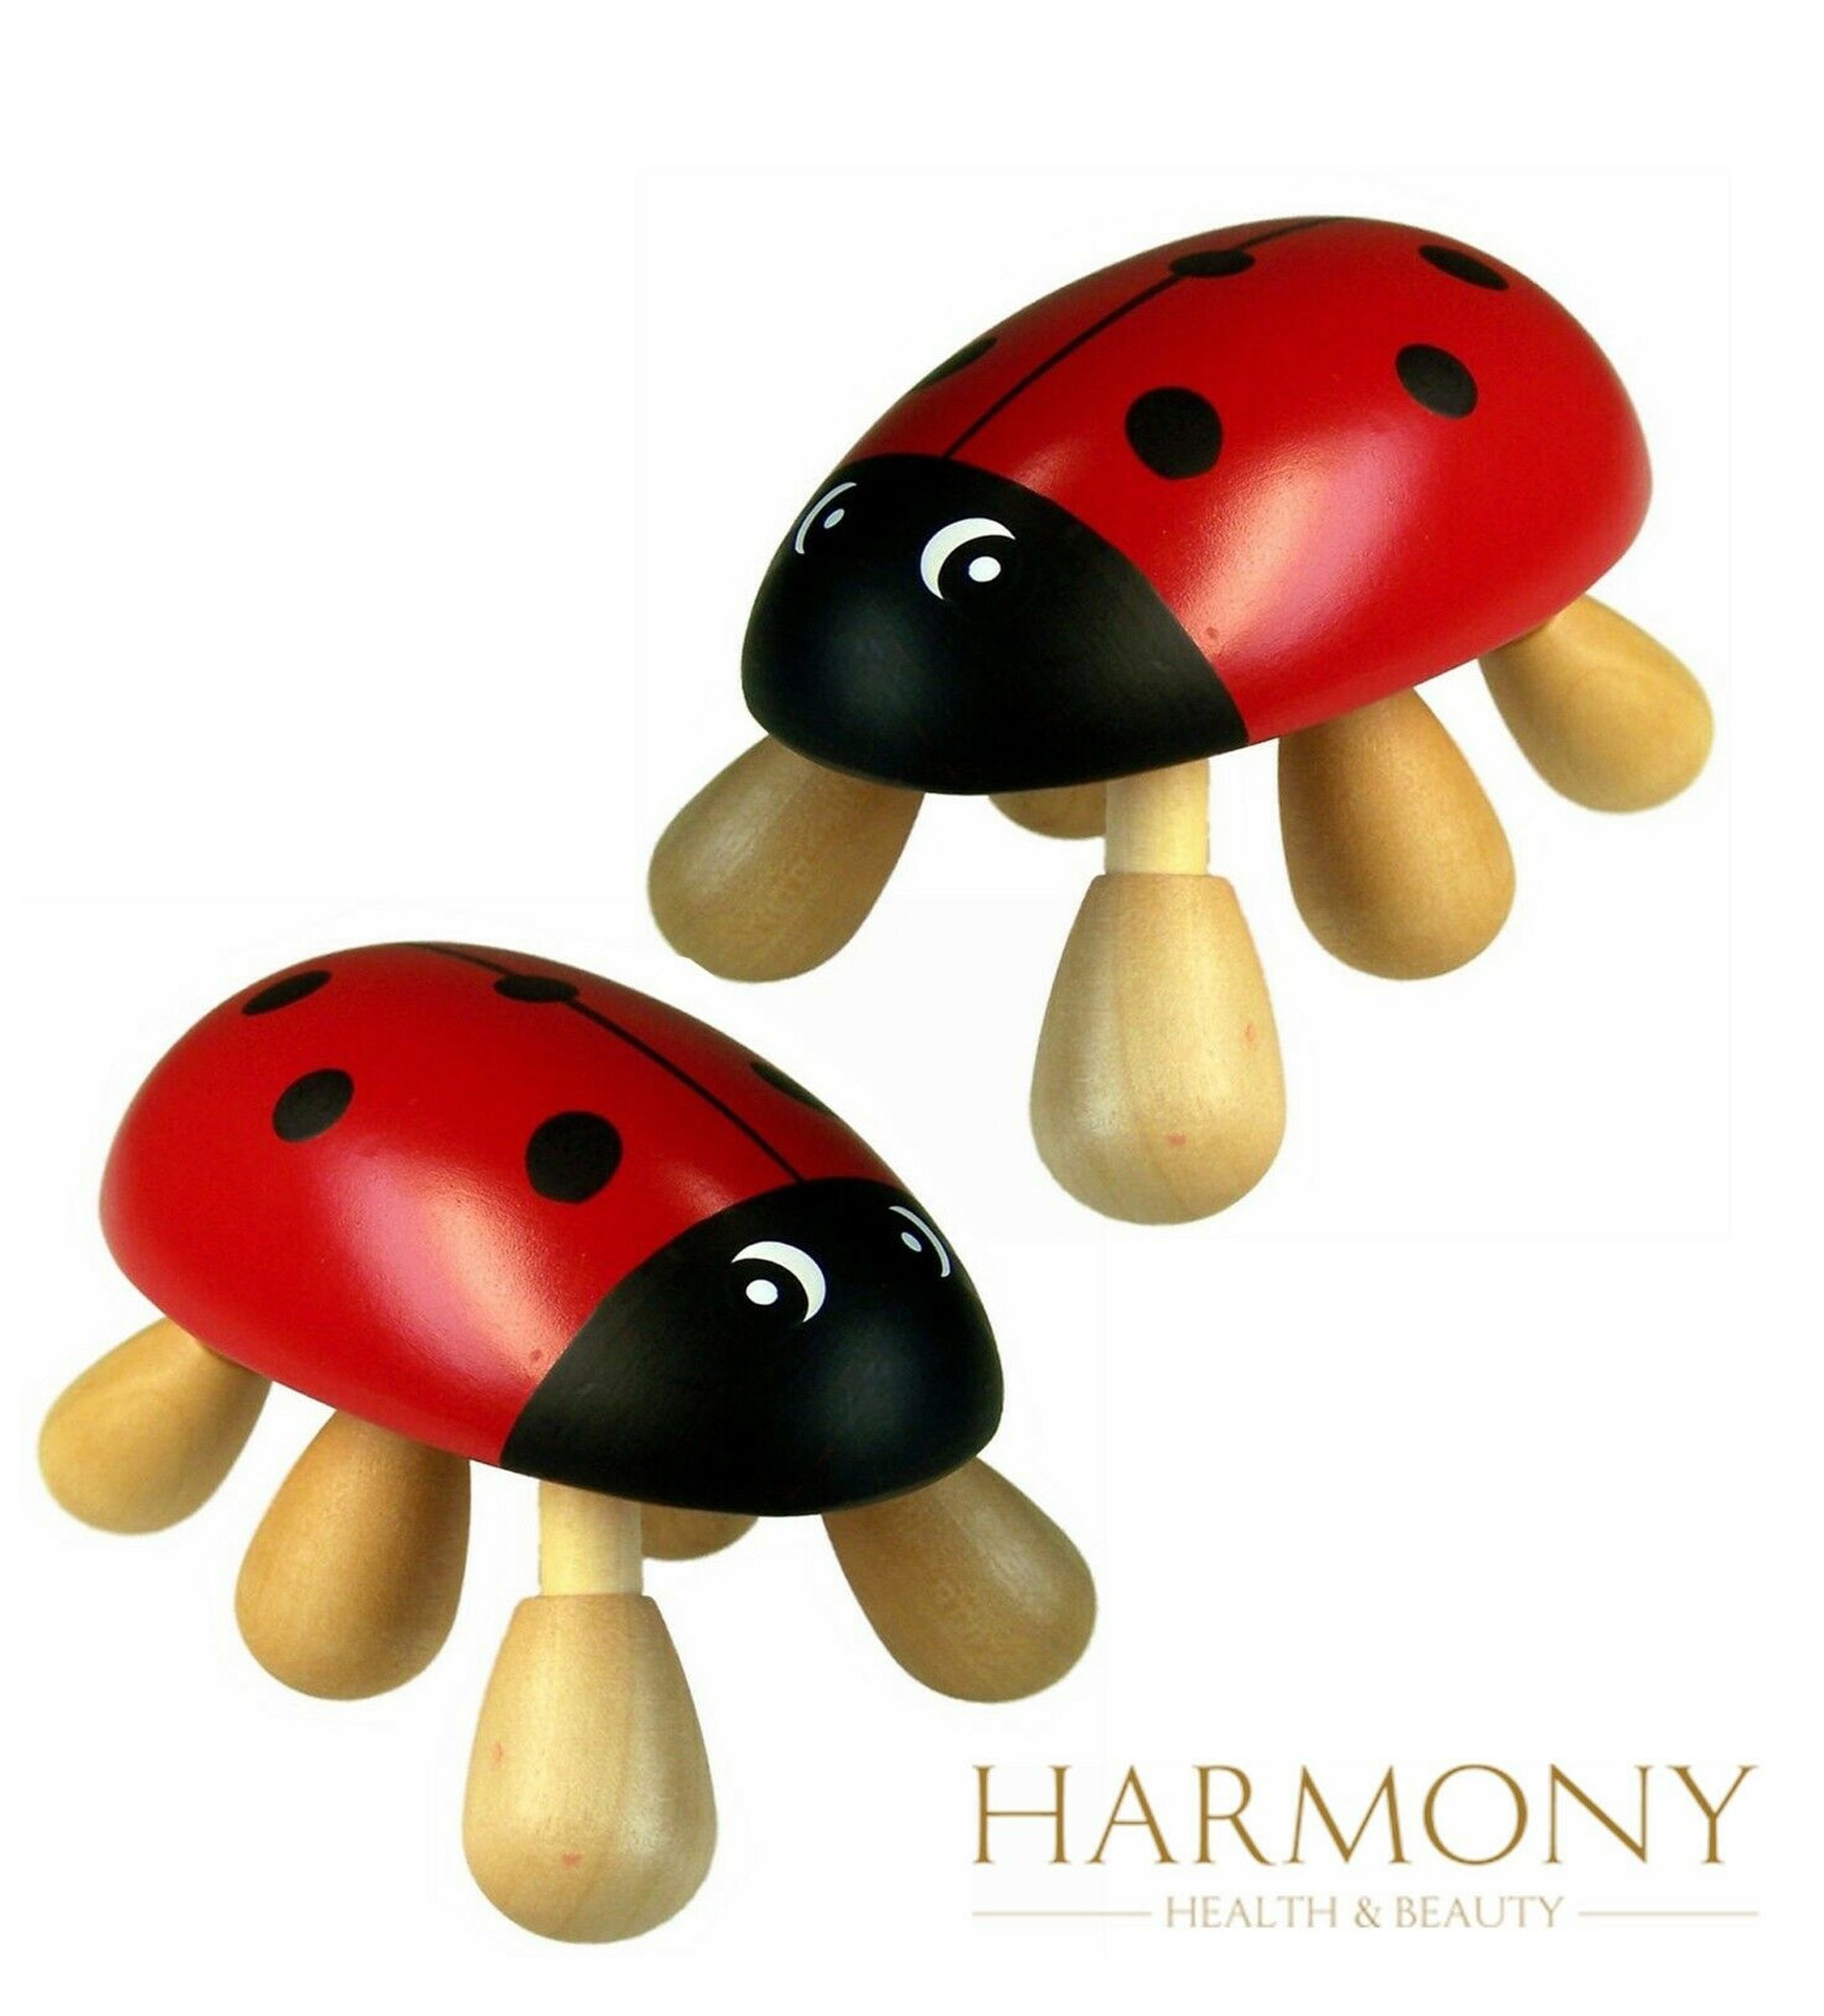 2 x Ladybird Hand Held Wooden Massager 